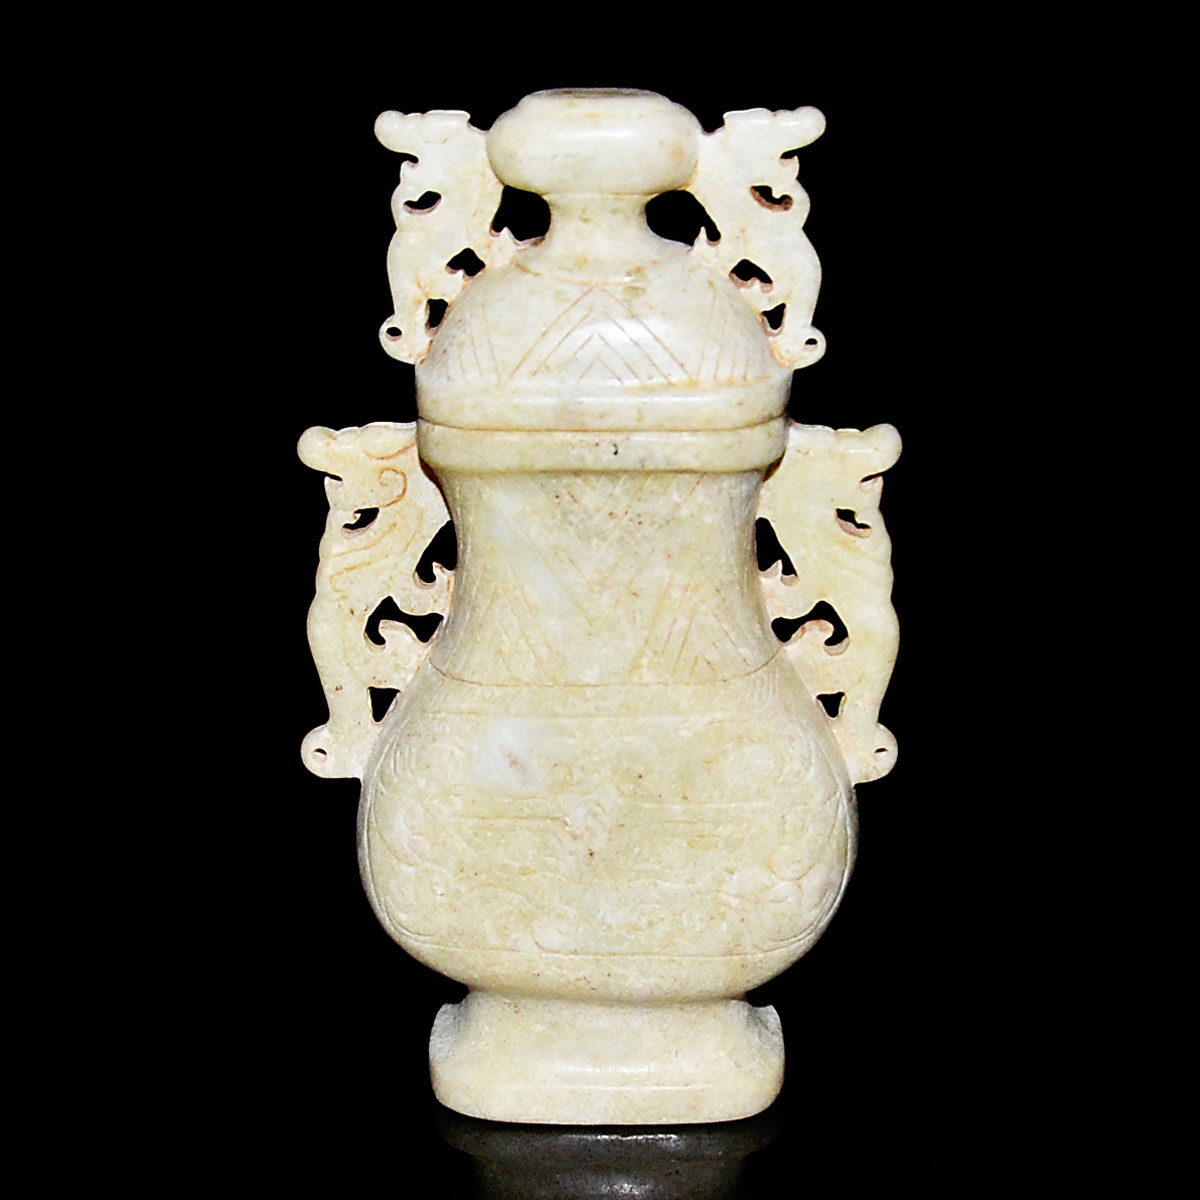 漢－雞骨白玉獸首紋龍耳扁瓶 Han, A Chicken-Bone White Jade Flask with Cover and Carved with Taotie Mask and Dragon